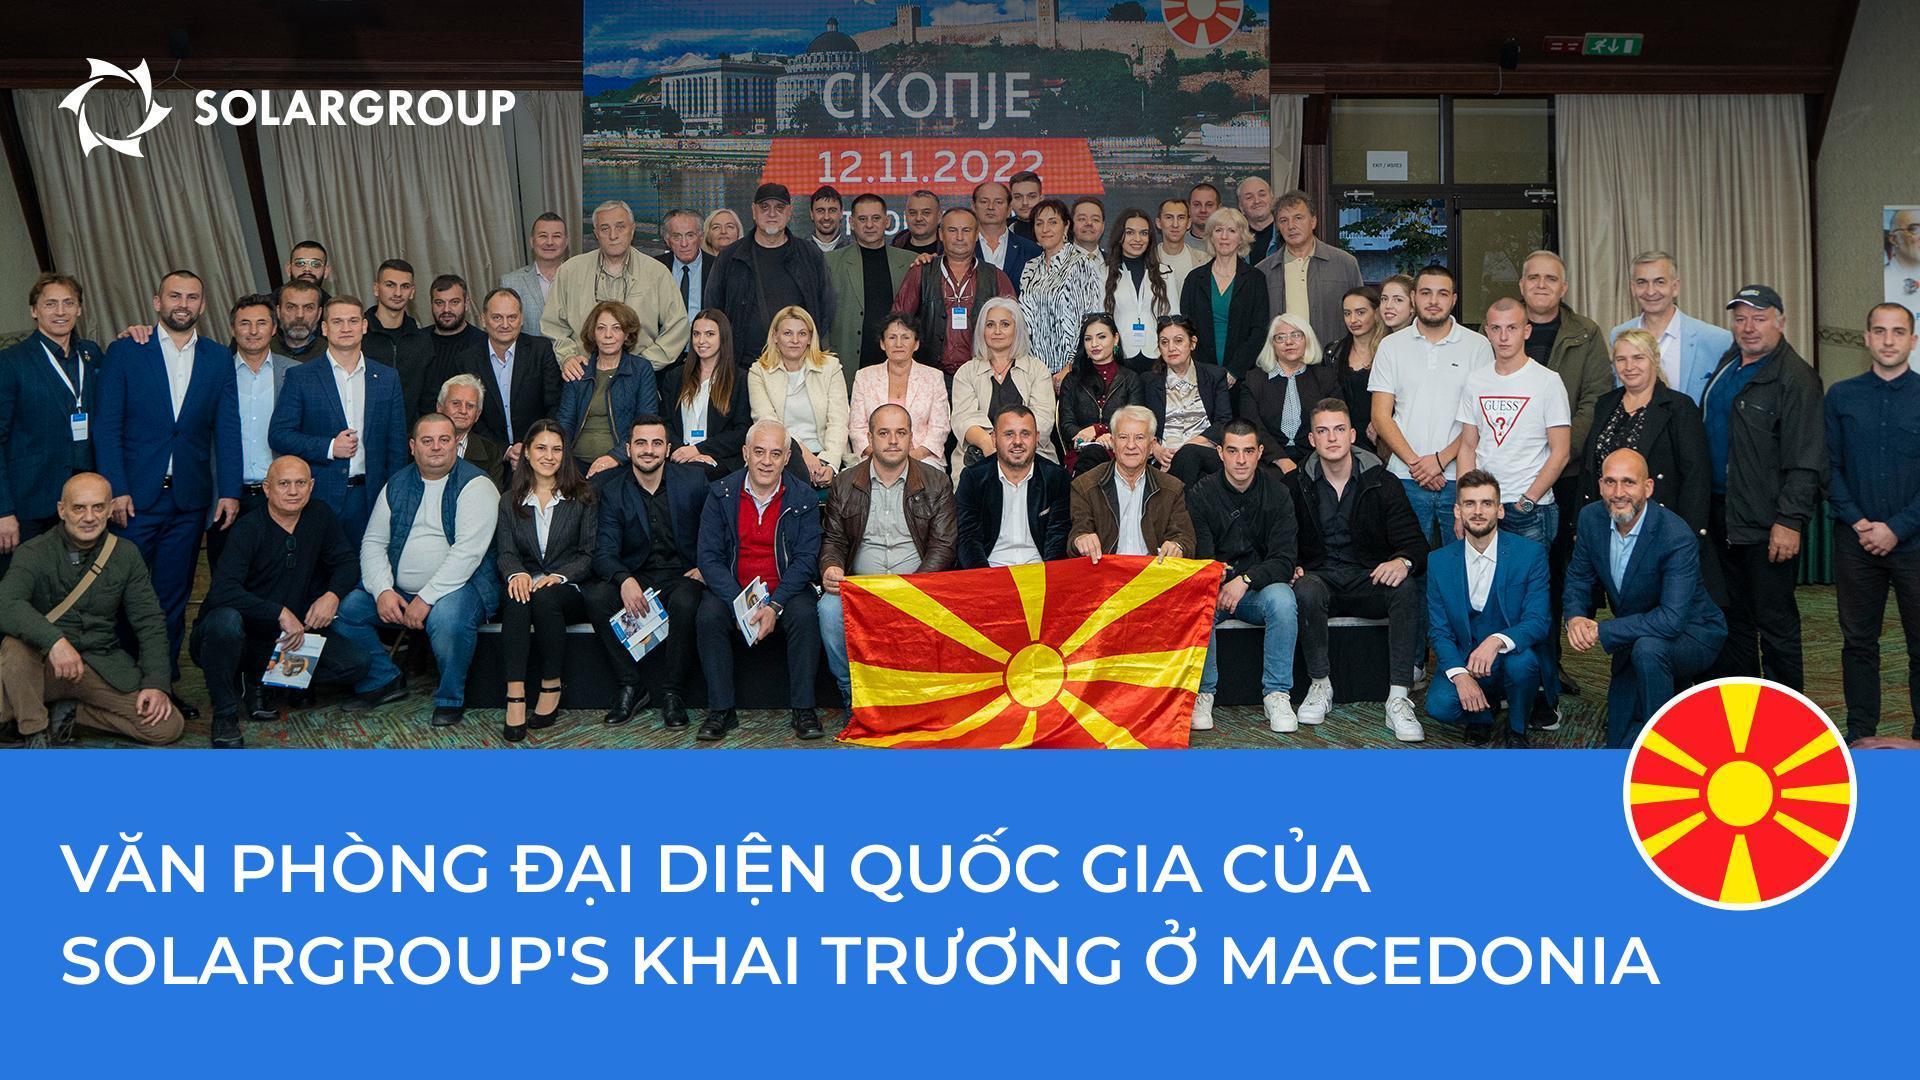 Hội nghị SOLARGROUP tại Bắc Macedonia: những điểm nổi bật